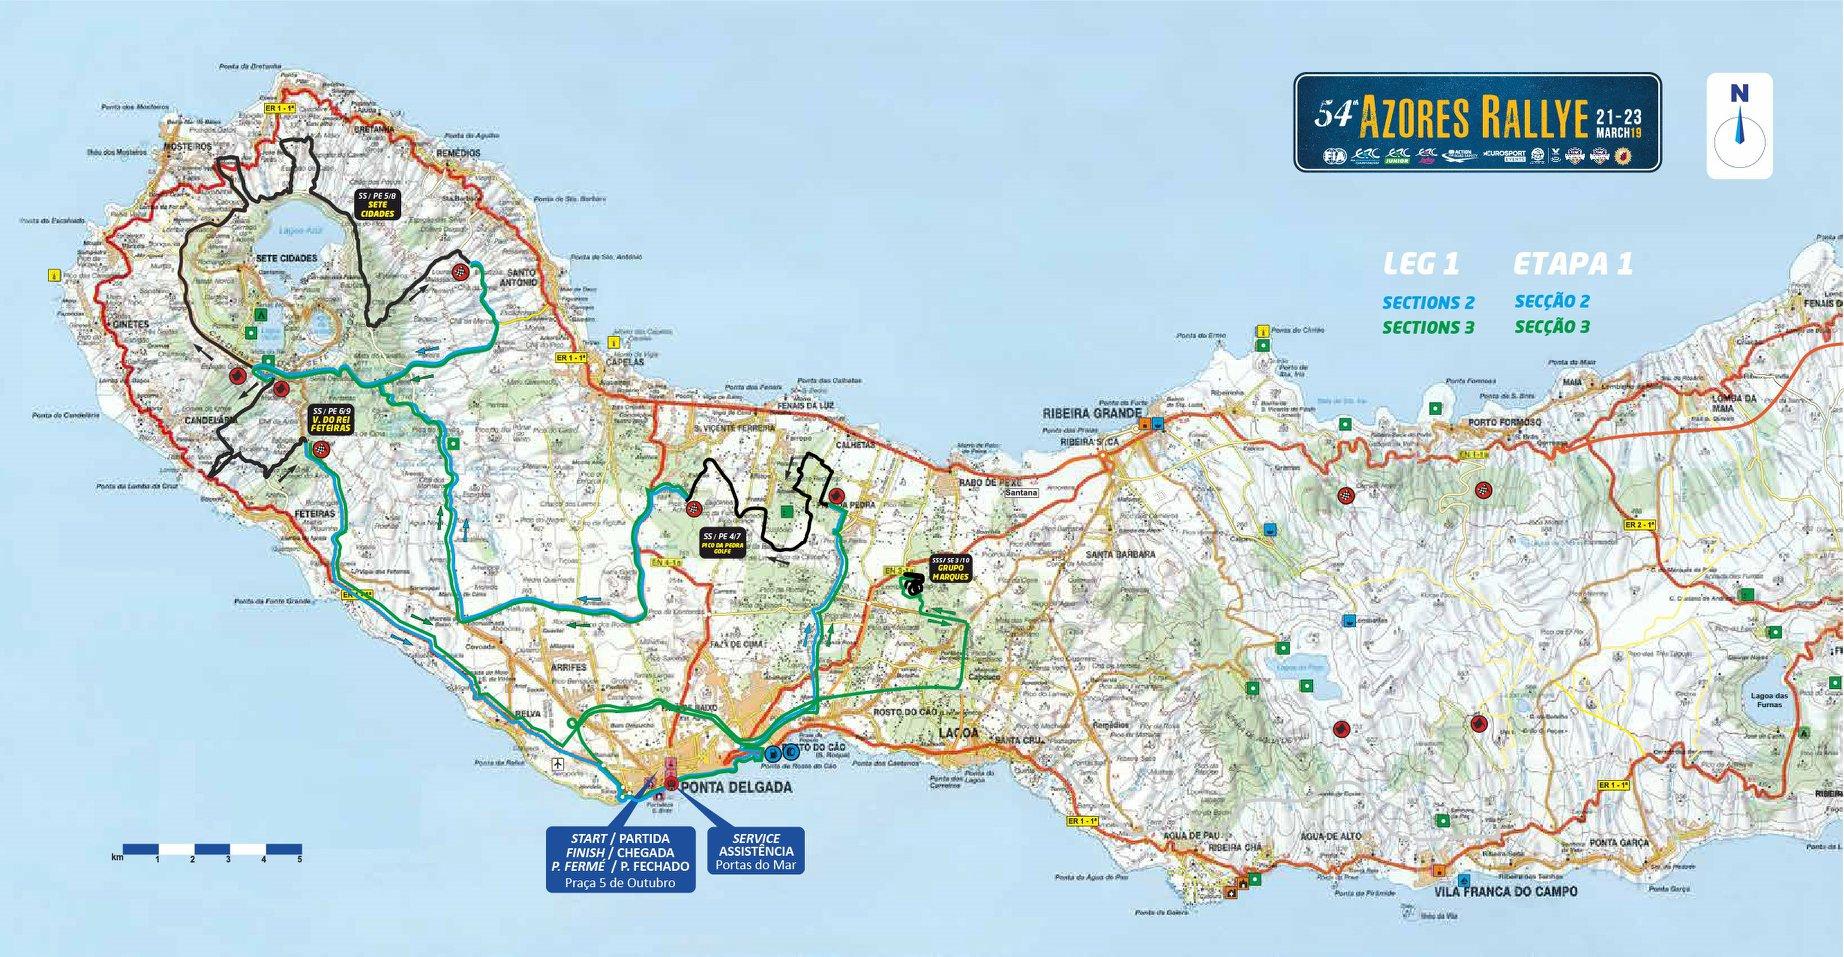 Mapa Azores Rallye 2019